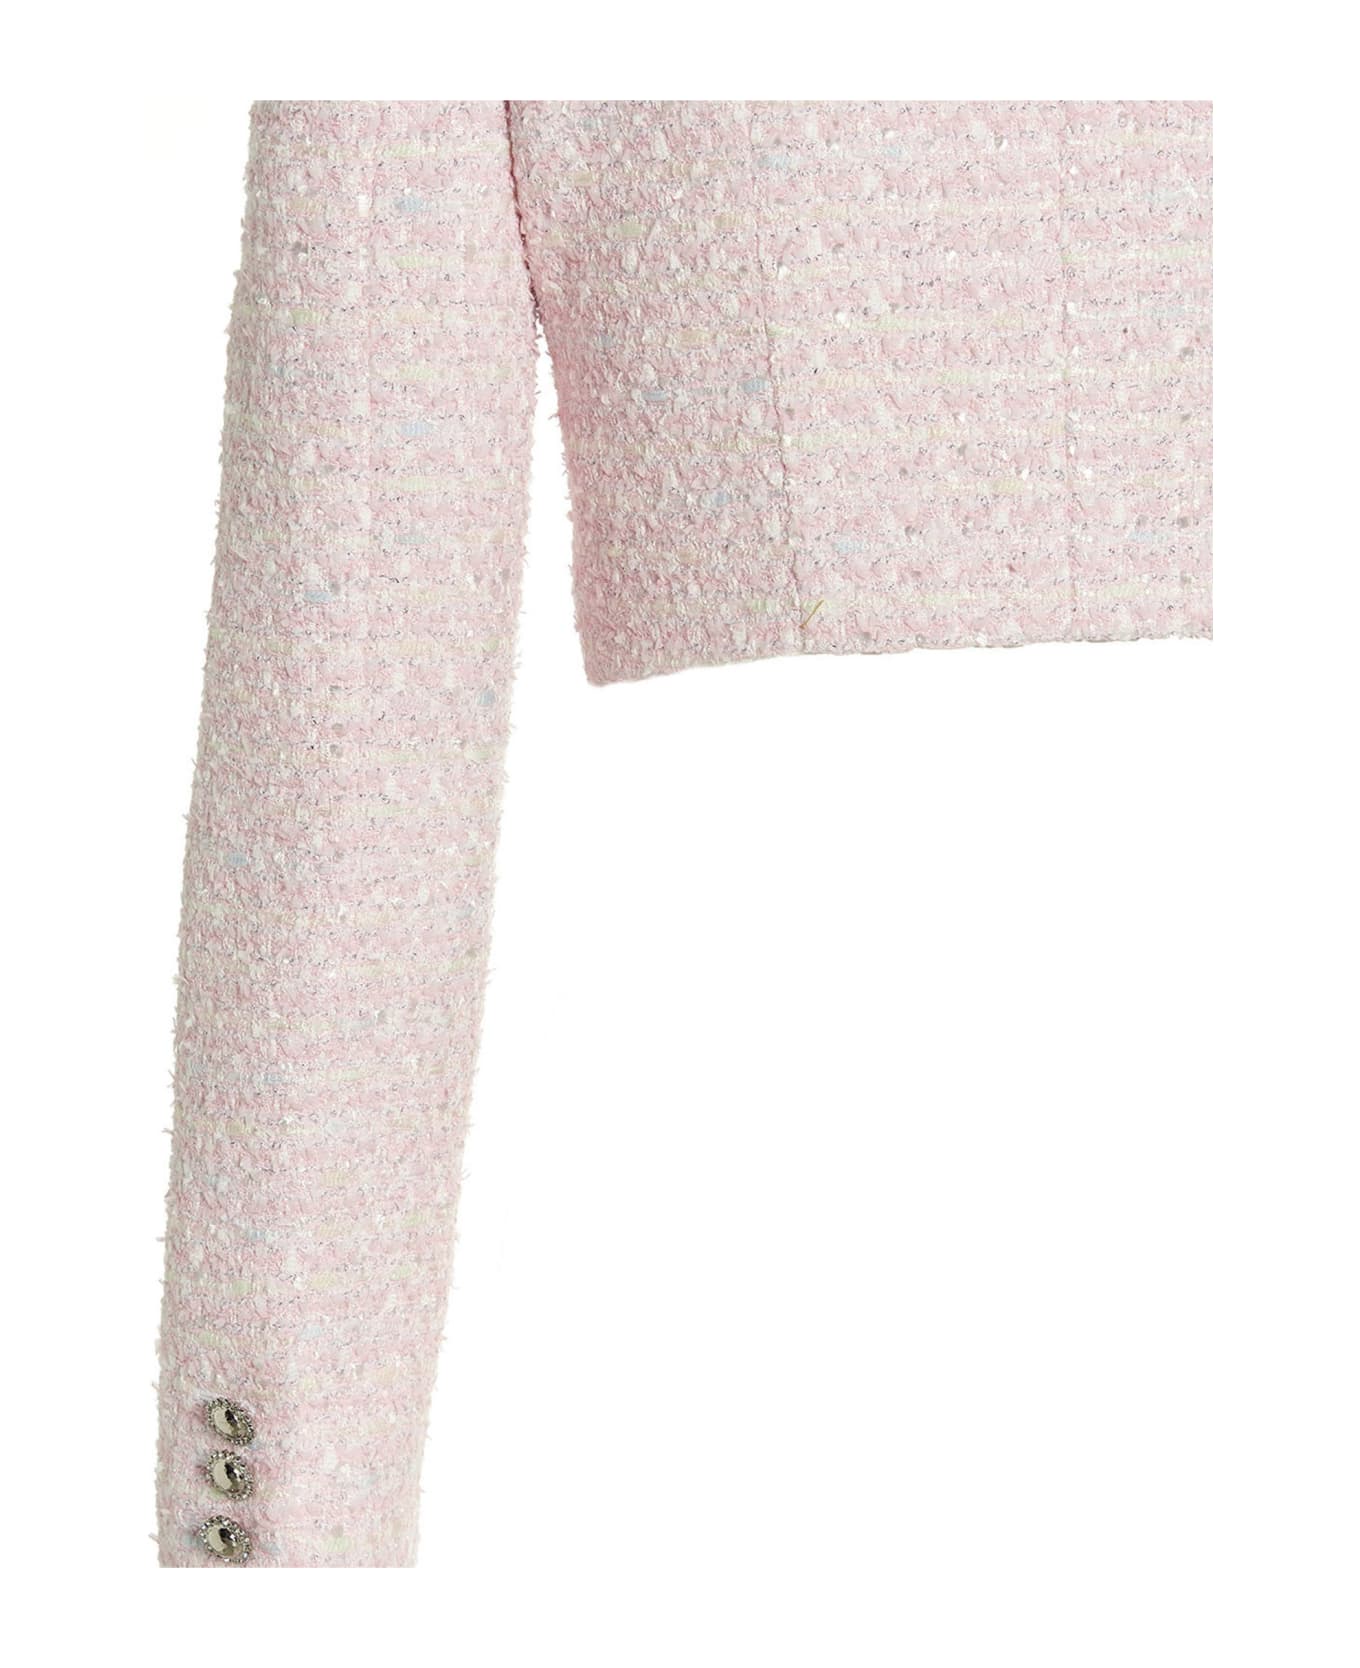 Alessandra Rich 'tweed Lurex' Cropped Jacket - PINK/WHITE